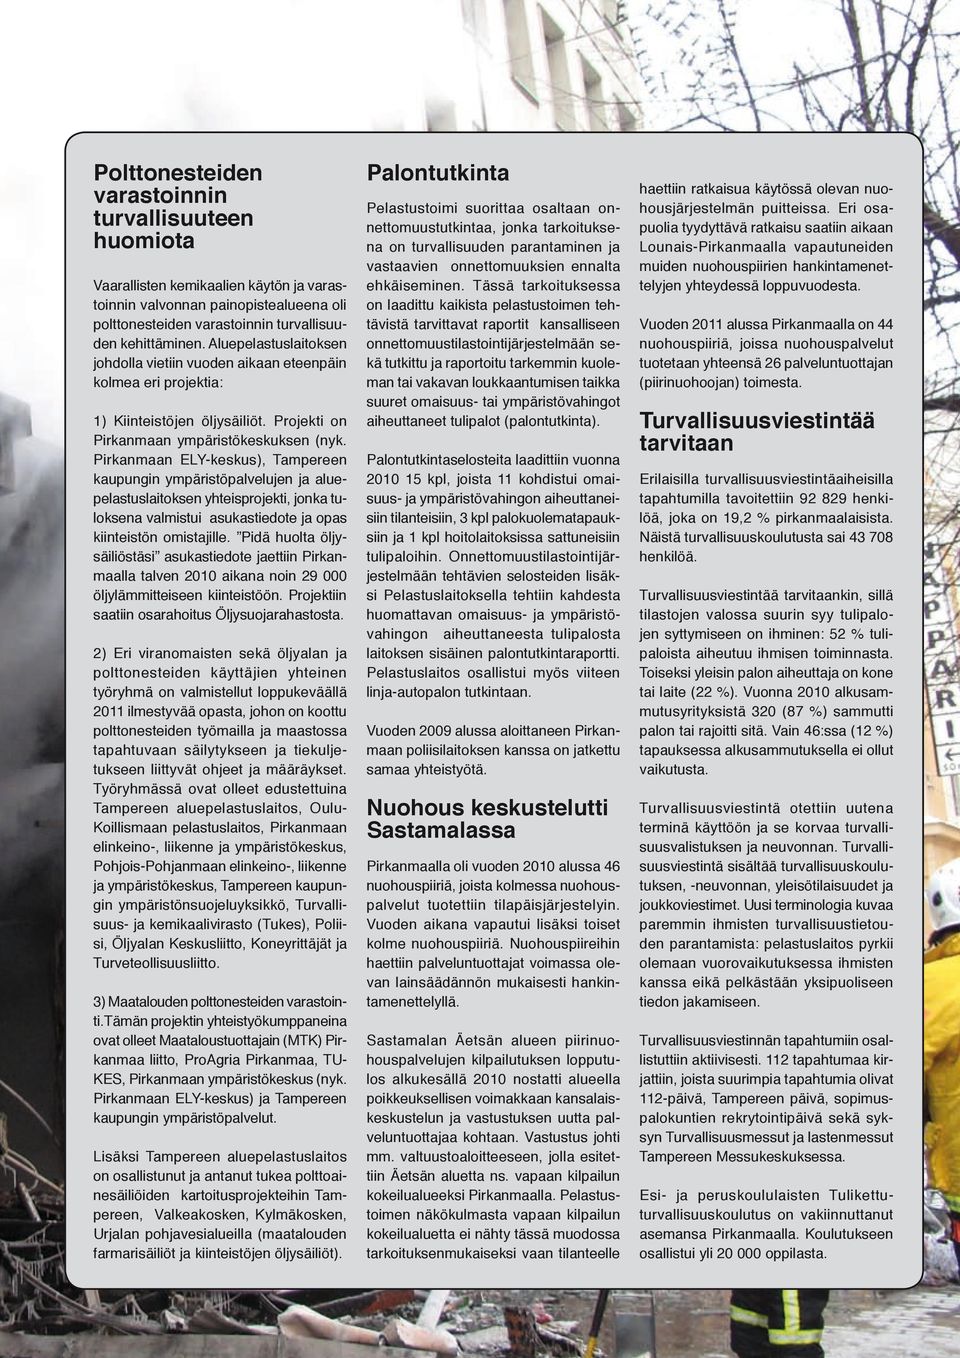 Pirkanmaan ELY-keskus), Tampereen kaupungin ympäristöpalvelujen ja aluepelastuslaitoksen yhteisprojekti, jonka tuloksena valmistui asukastiedote ja opas kiinteistön omistajille.